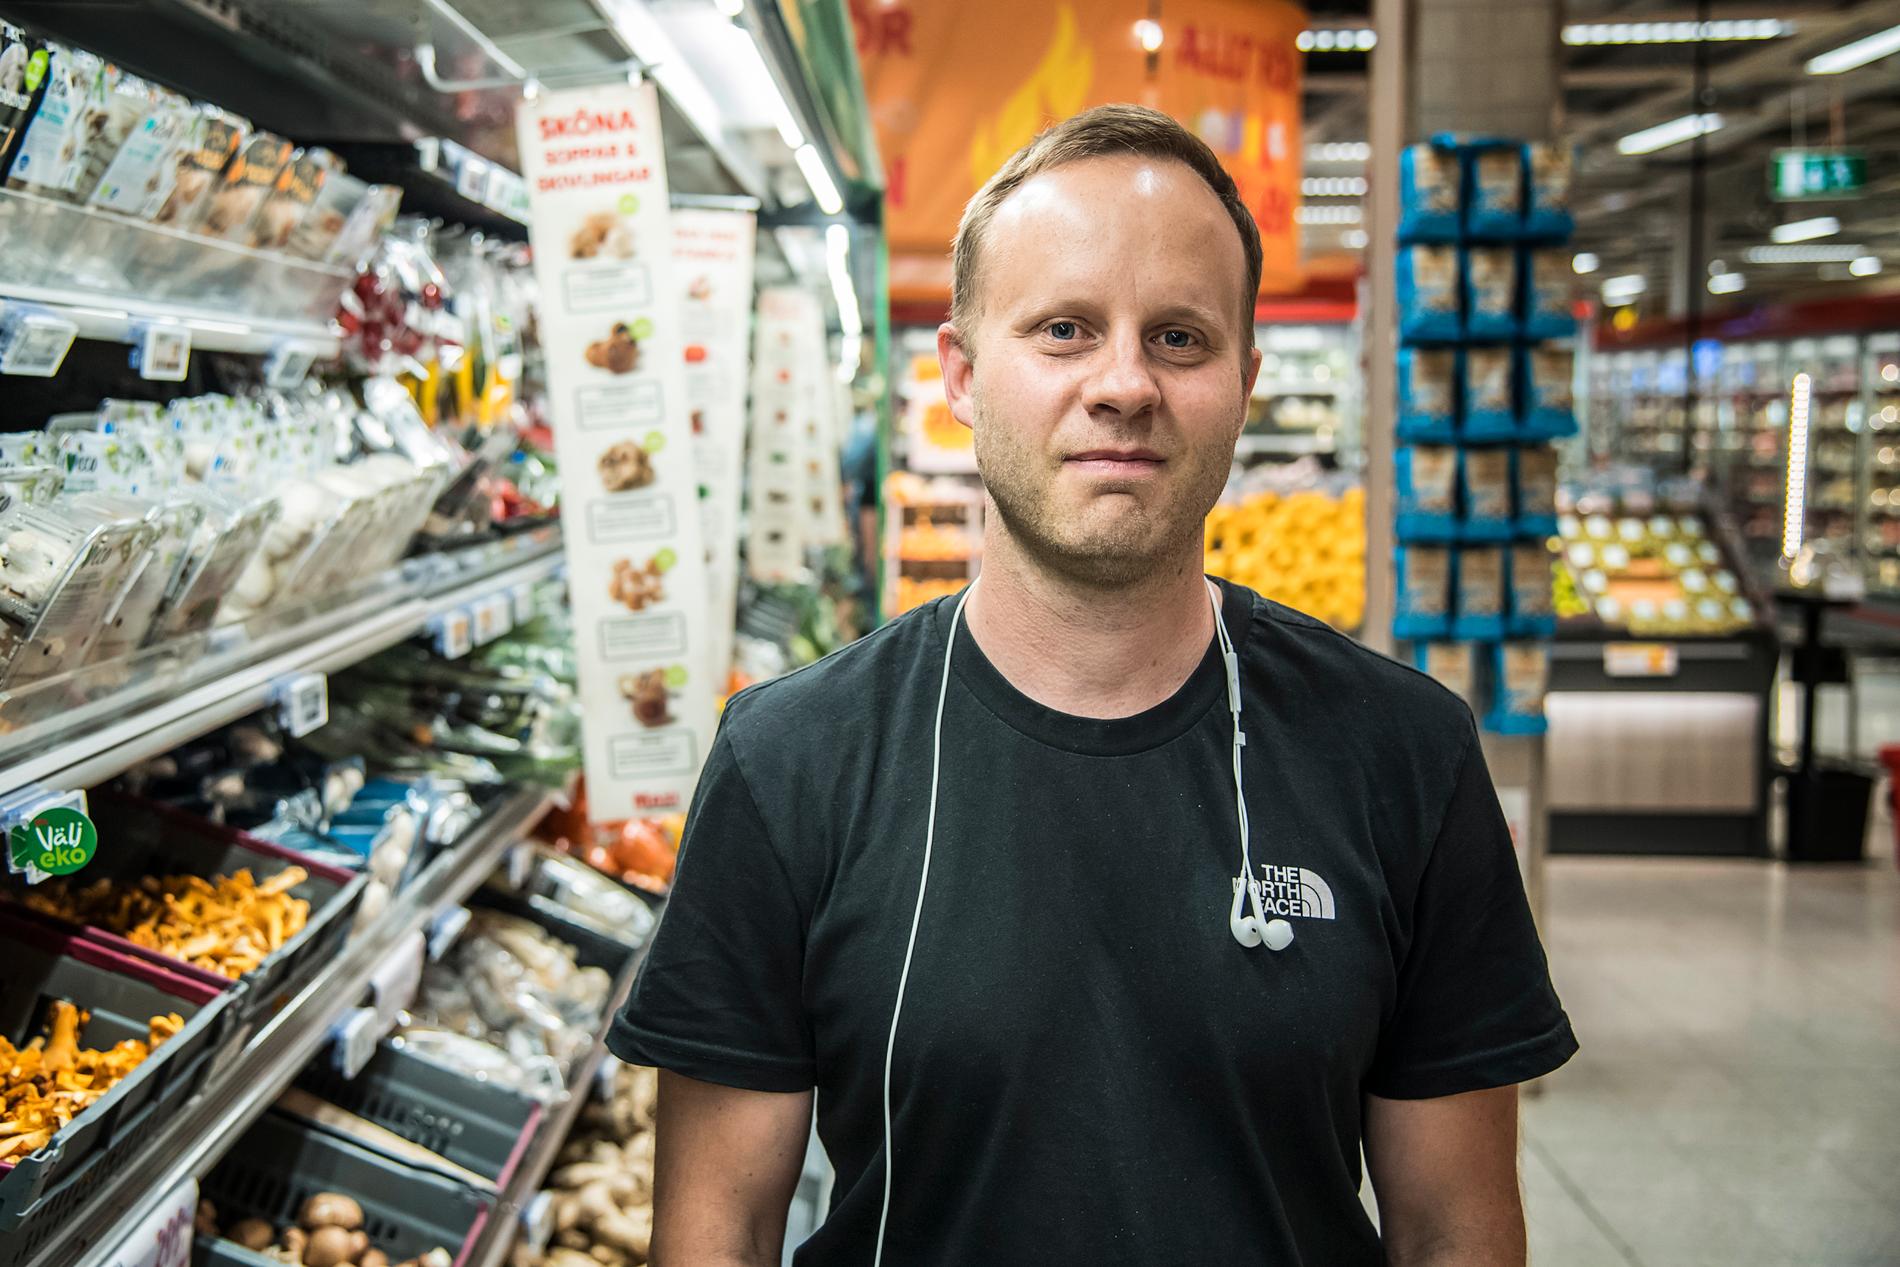 Är grönsakerna för dyra?– Ja, jag skulle äta mer vegetariskt om priserna gick ner. Ibland struntar jag i grönsaker om det är för dyrt, säger Peter Kullgren, 40, konsultchef, Stockholm.